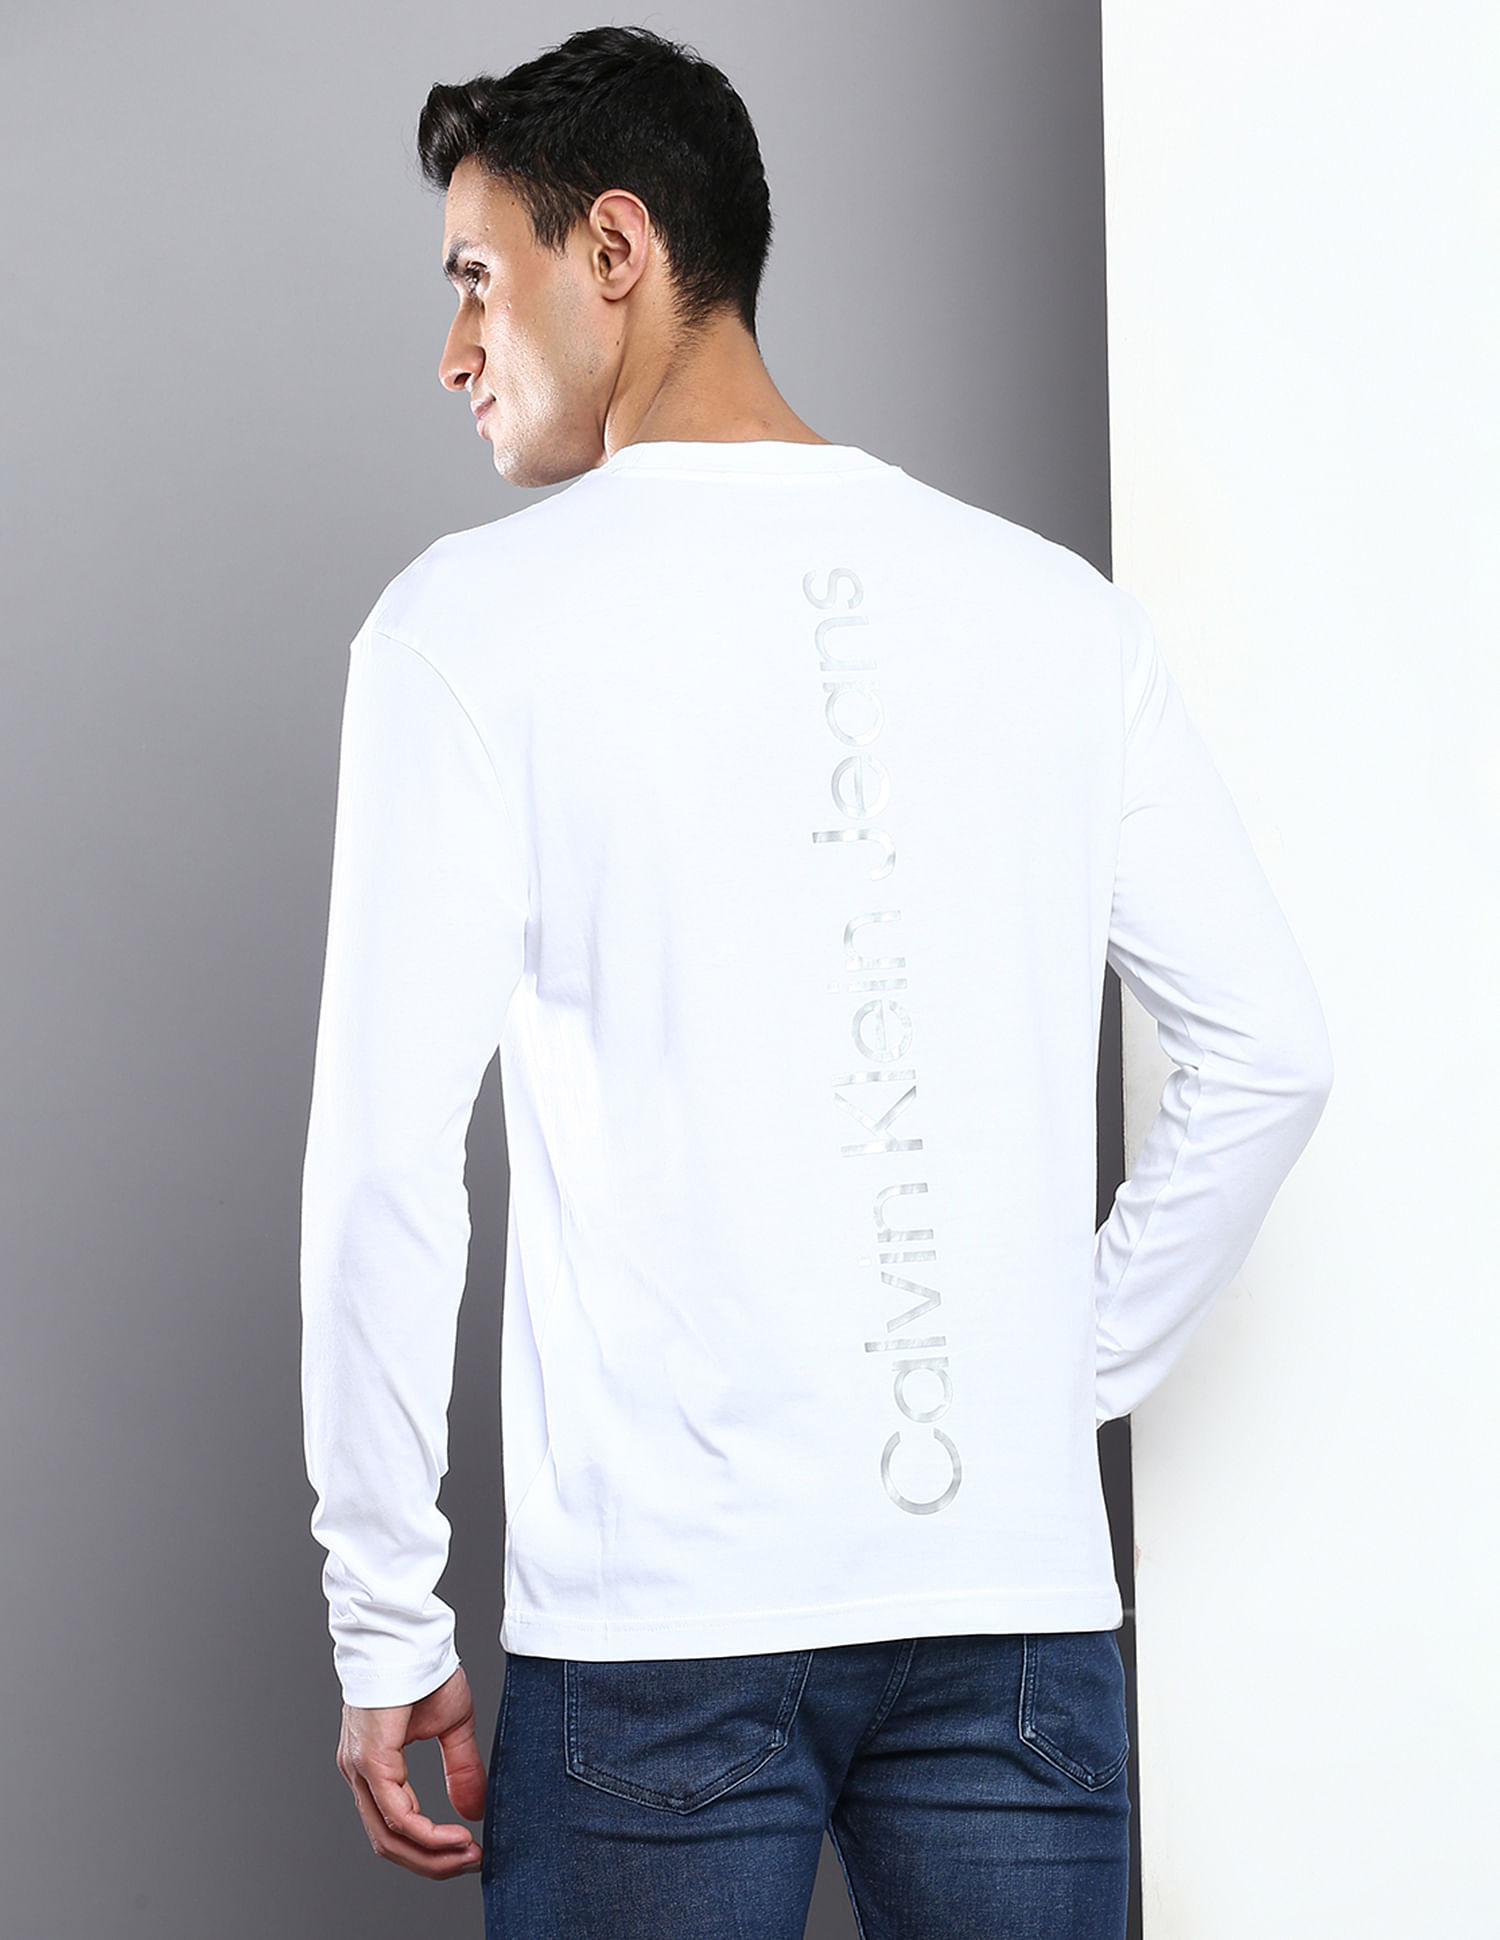 CALVIN KLEIN Institutional Logo Men's Slim T-Shirt - White